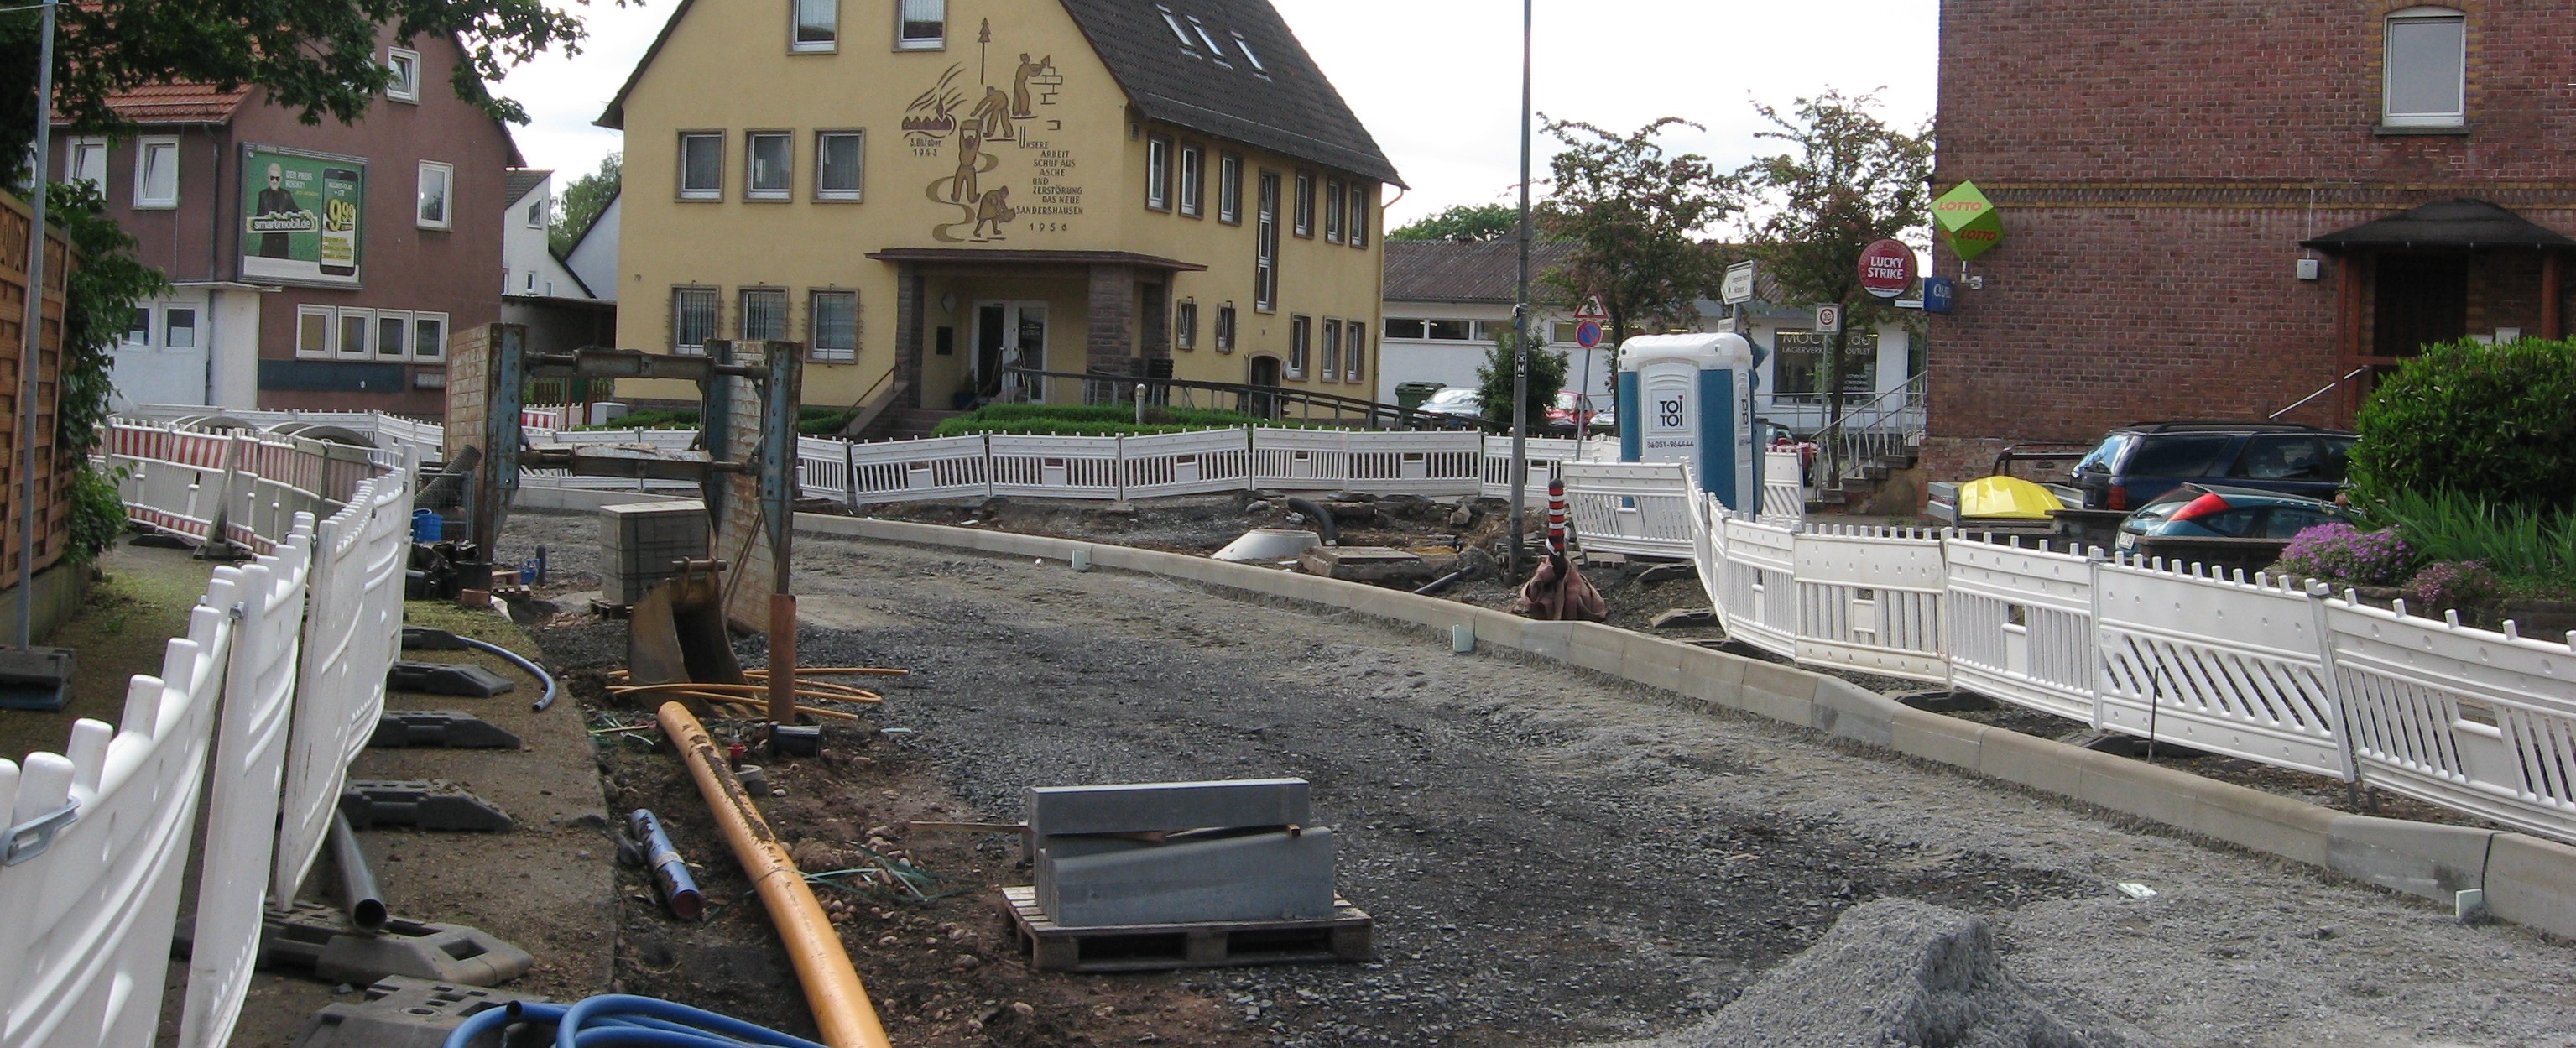 Die Hannoversche Straße während des Umbaus, mit Blick auf das alte Bürgermeisteramt.